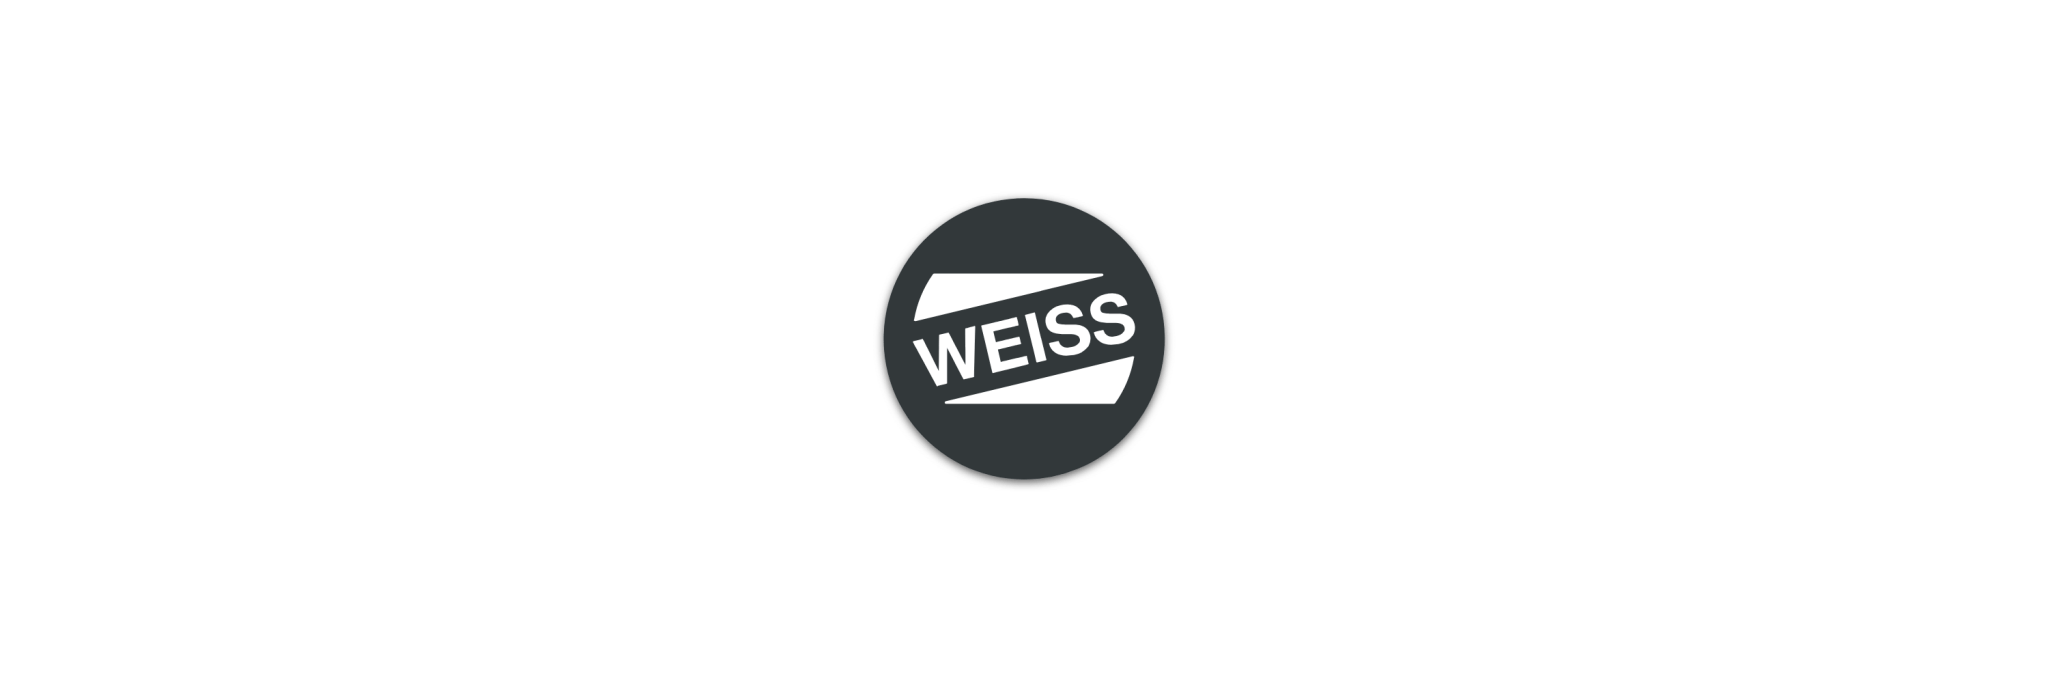 WEISS - Klenk Maschinenhandel